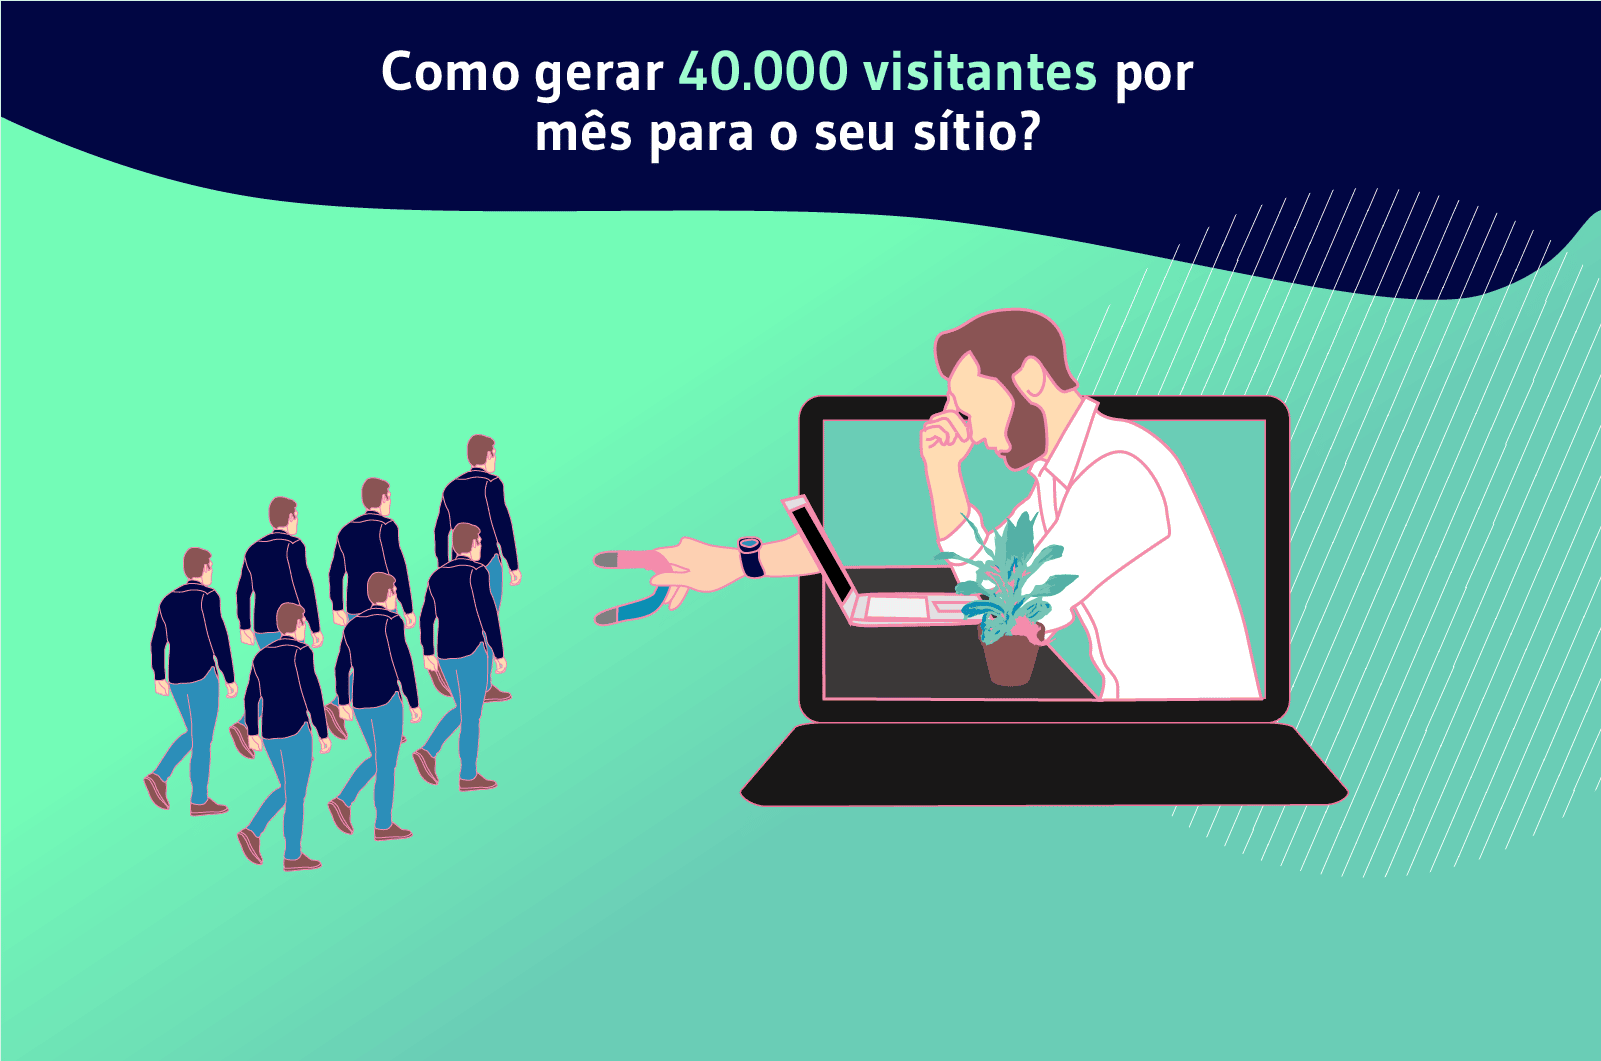 portuguais comment generer 40 000 visiteurs par mois